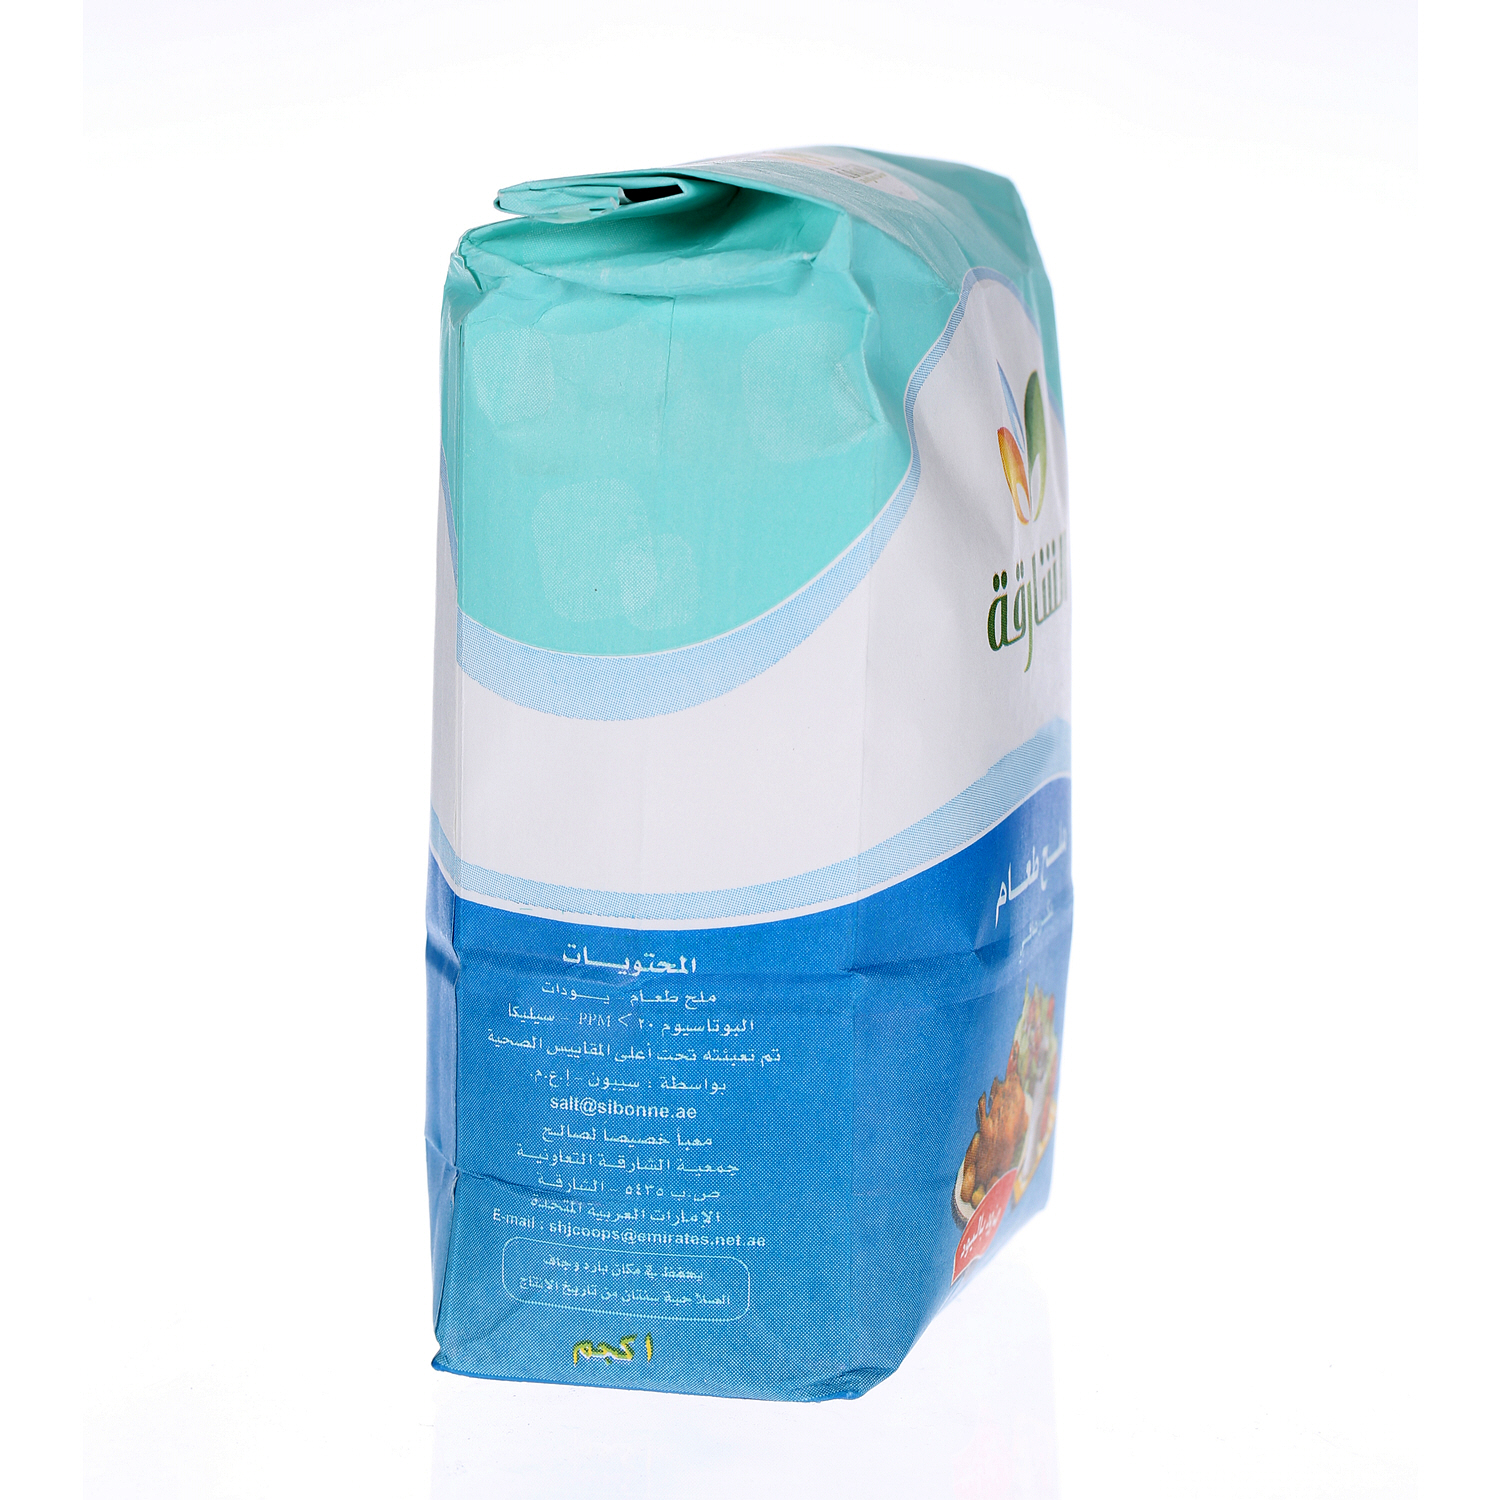 Sharjah Coop Iodized Salt Packet 1 Kg